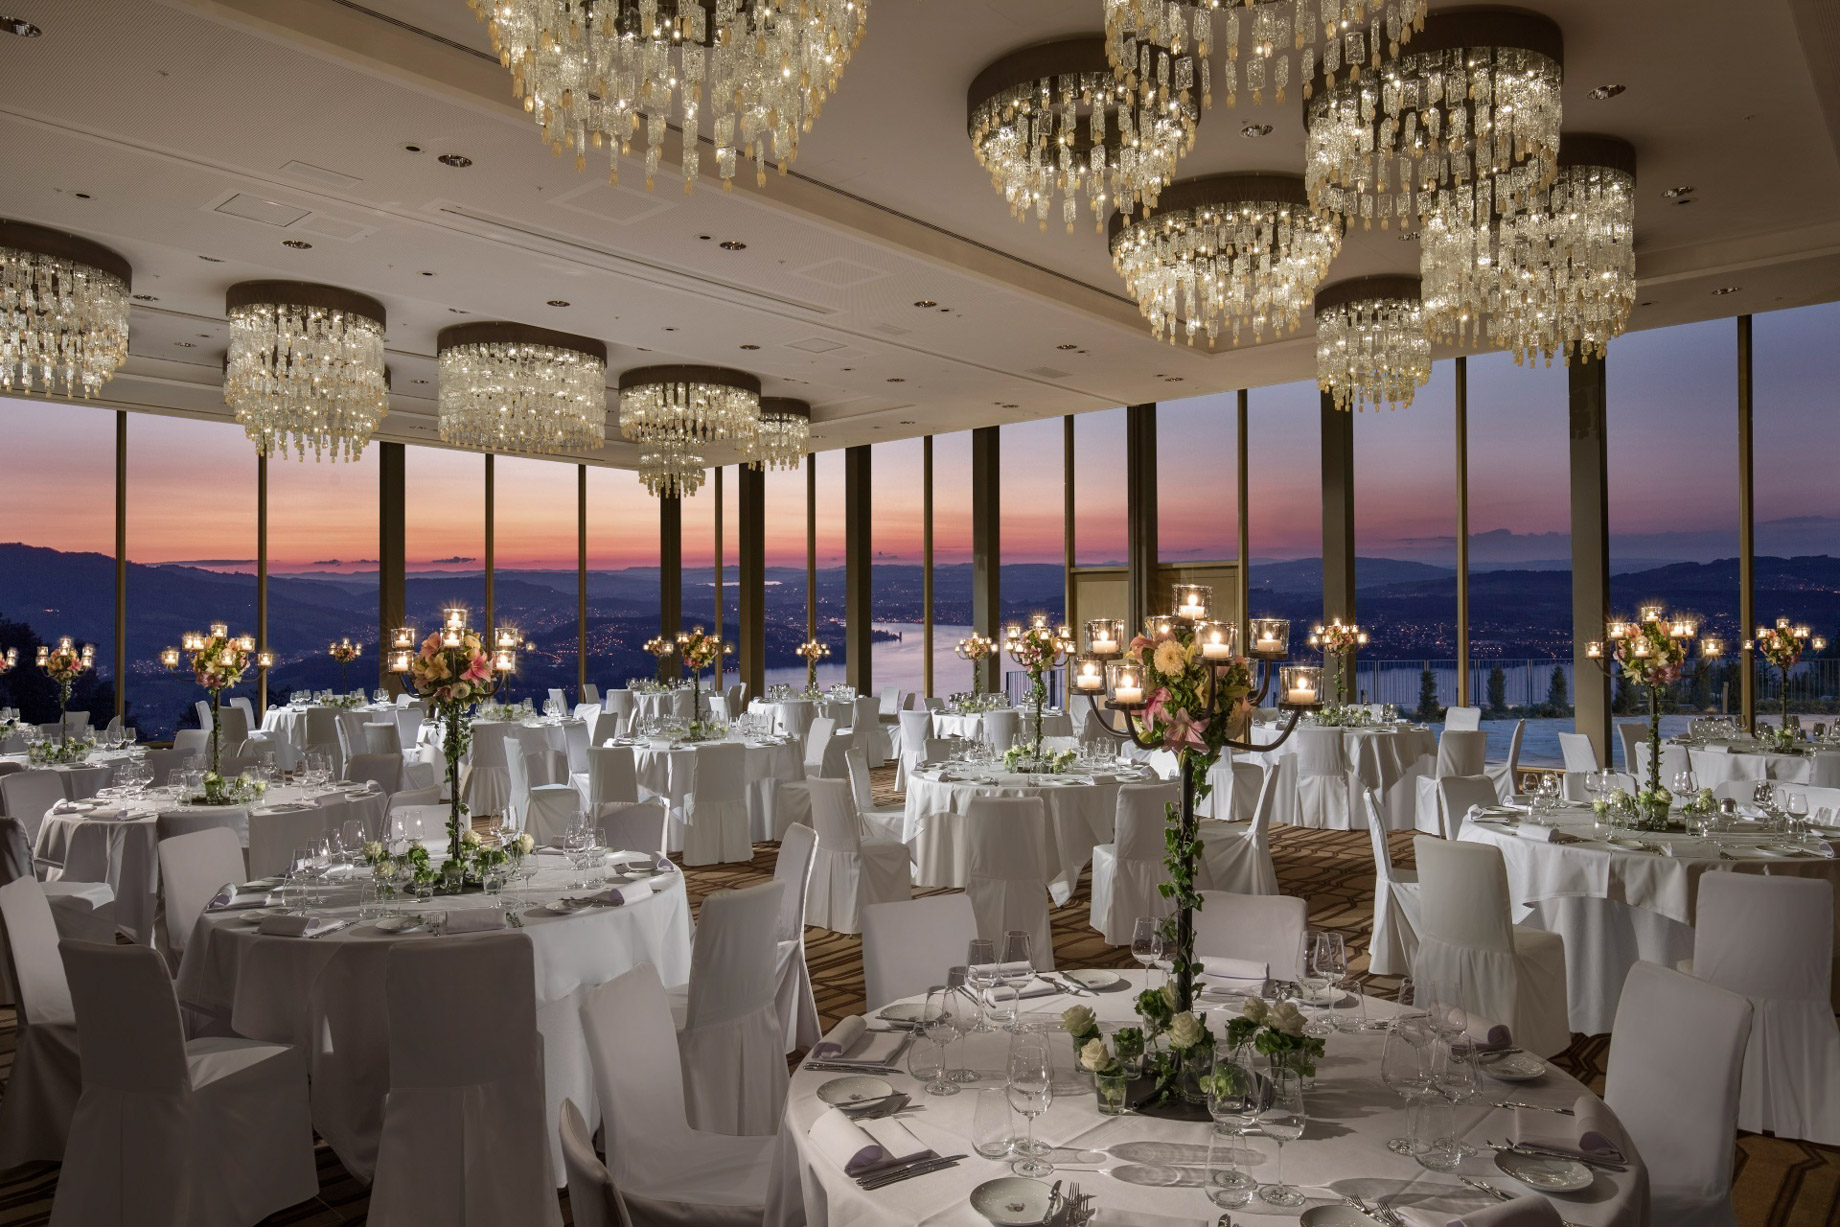 Burgenstock Hotel & Alpine Spa – Obburgen, Switzerland – Ballroom Dining Setup